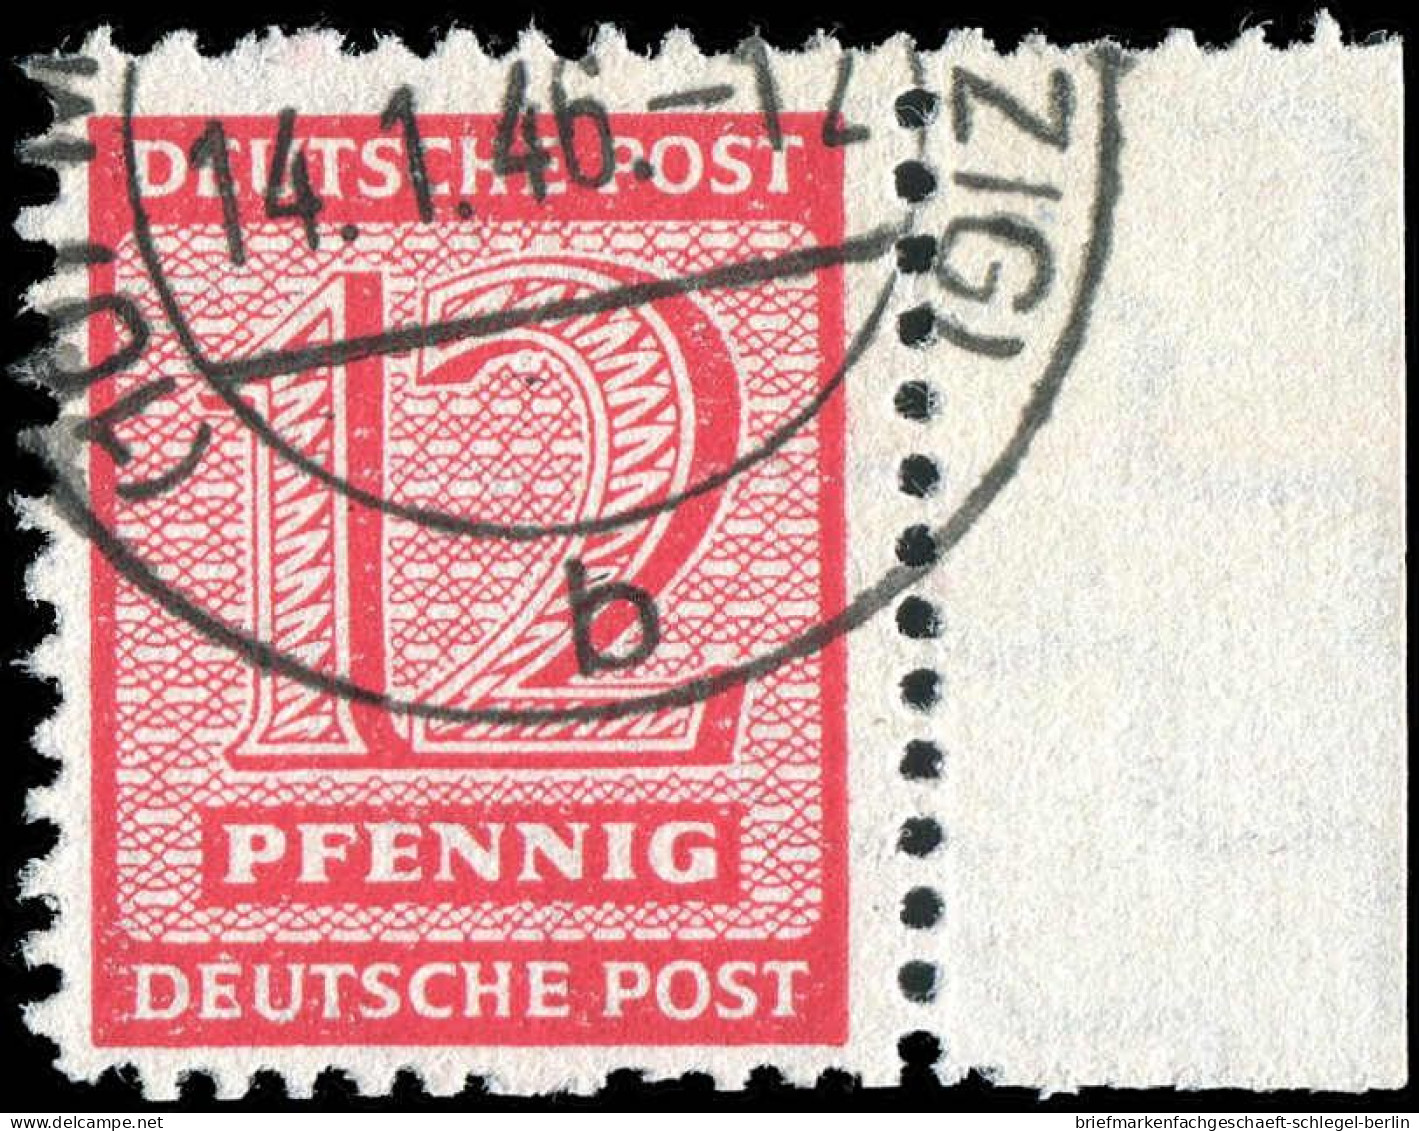 SBZ - Westsachsen, 1945, 119 AY, Briefstück - Sonstige & Ohne Zuordnung